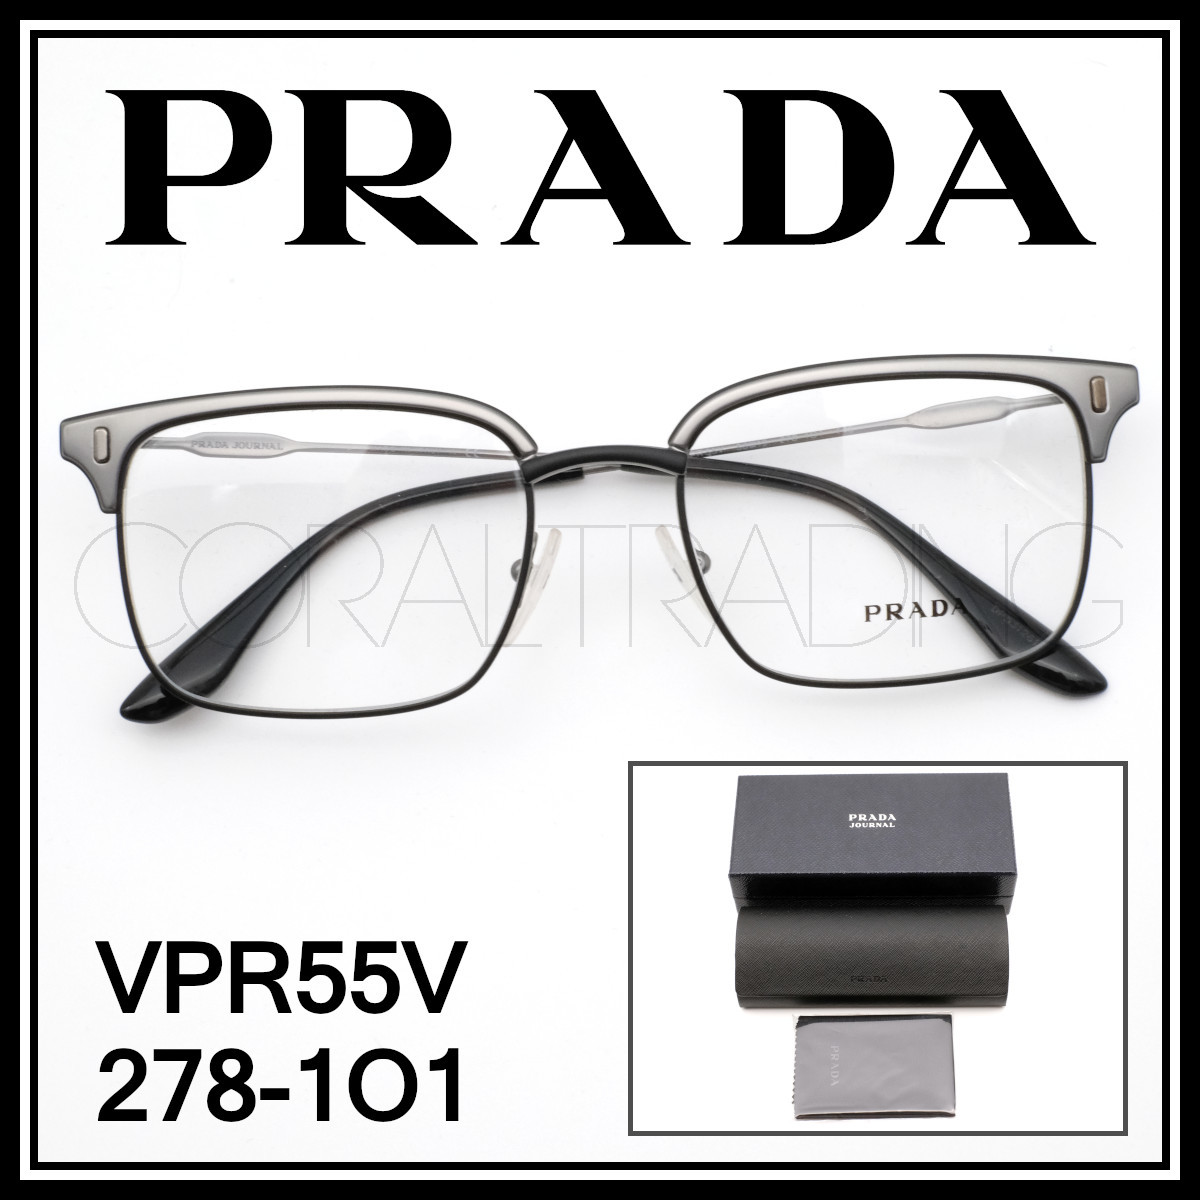 新品本物 PRADA VPRV マットガンメタル/マットブラック プラダ